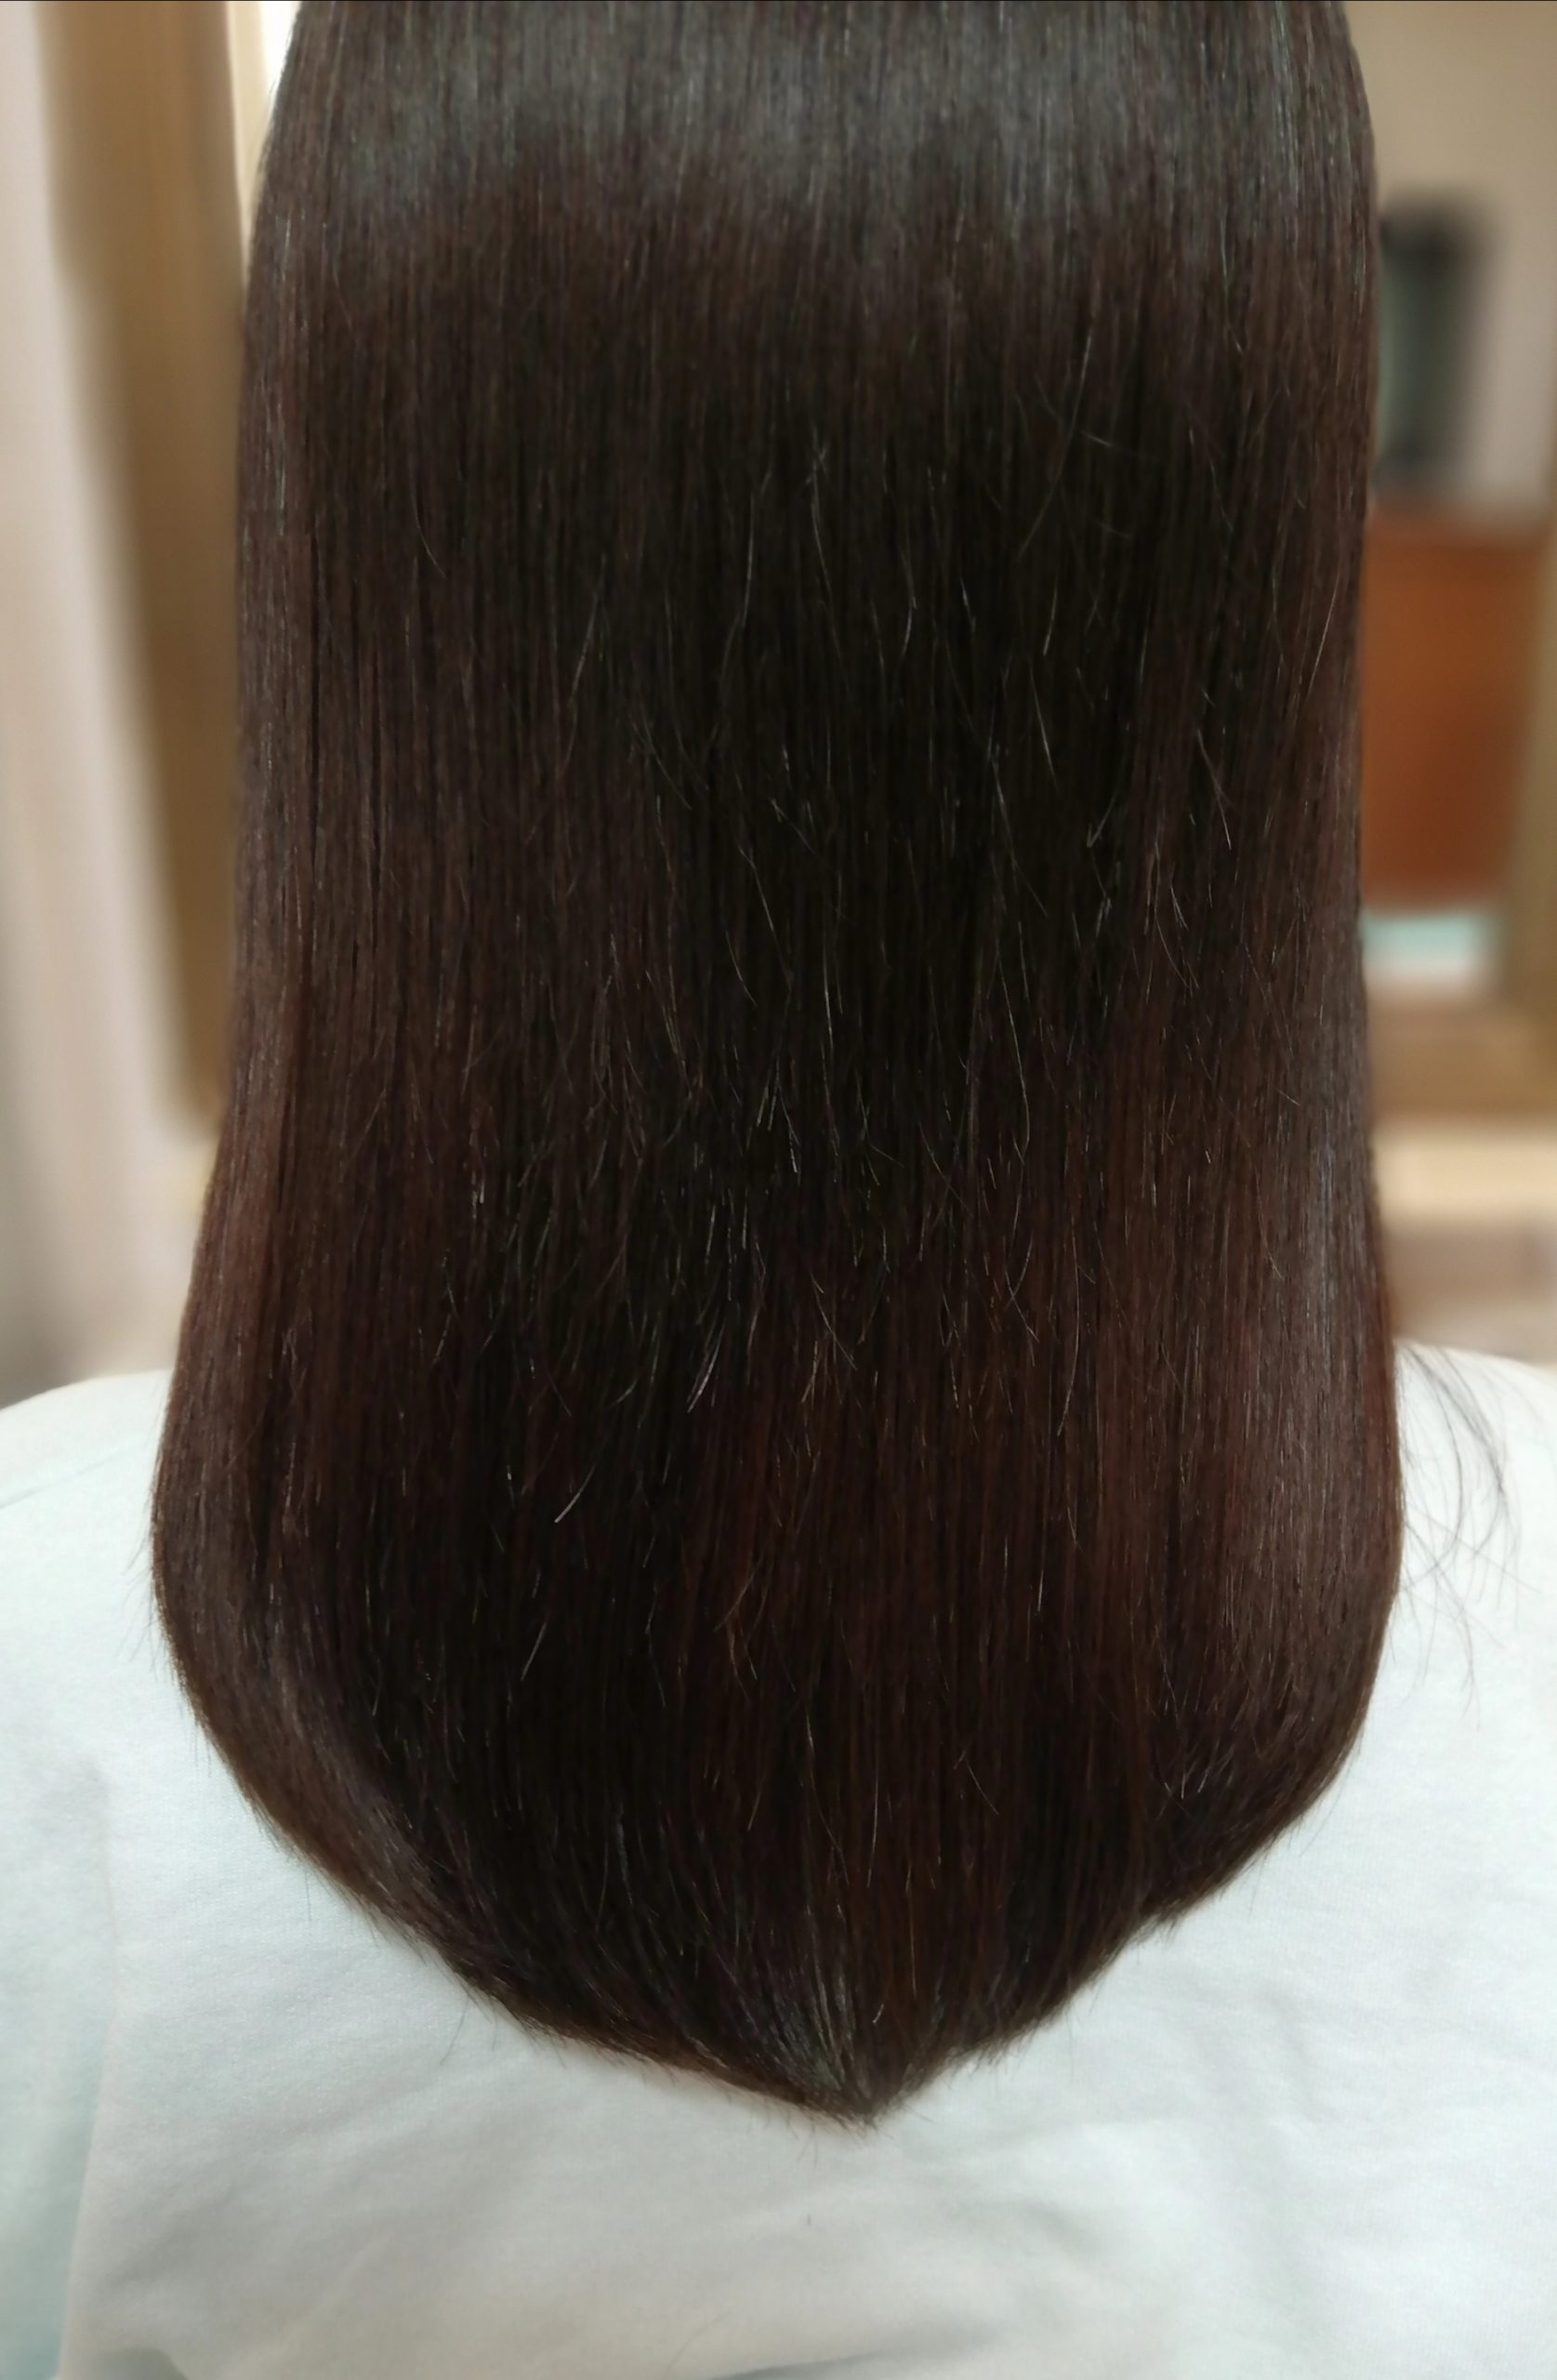 安い美容室に行って変な髪型にされた 和泉市美容室 ヘアカット研究家美容師 斉木